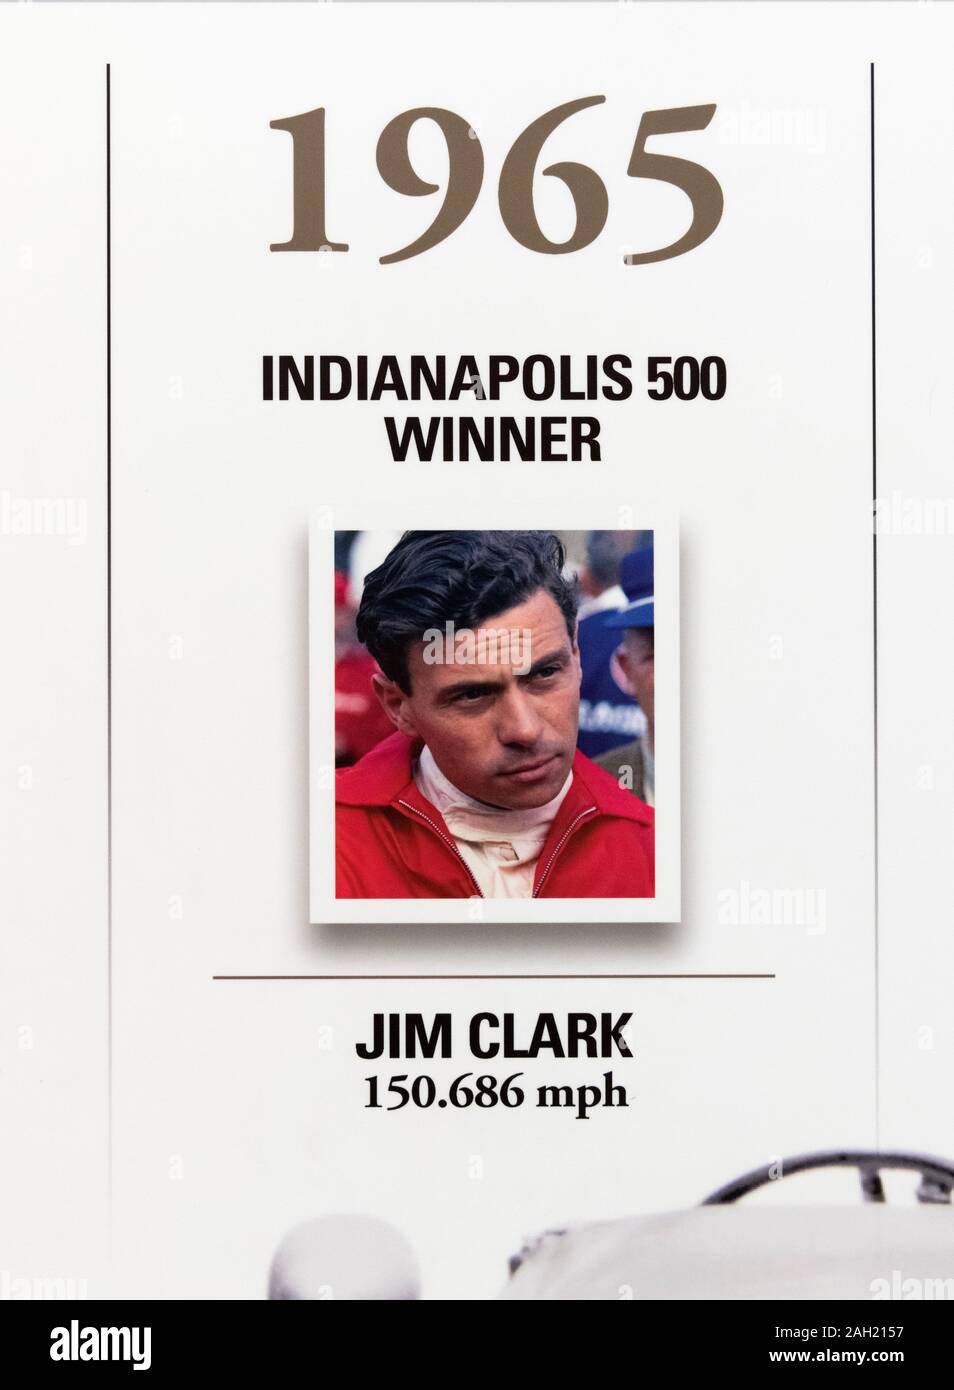 Jim Clark, Gewinner des 1965 Indy 500, an der Wand der Gewinner auf dem Indianapolis Motor Speedway Museum, Indianapolis, Indiana, USA. Stockfoto